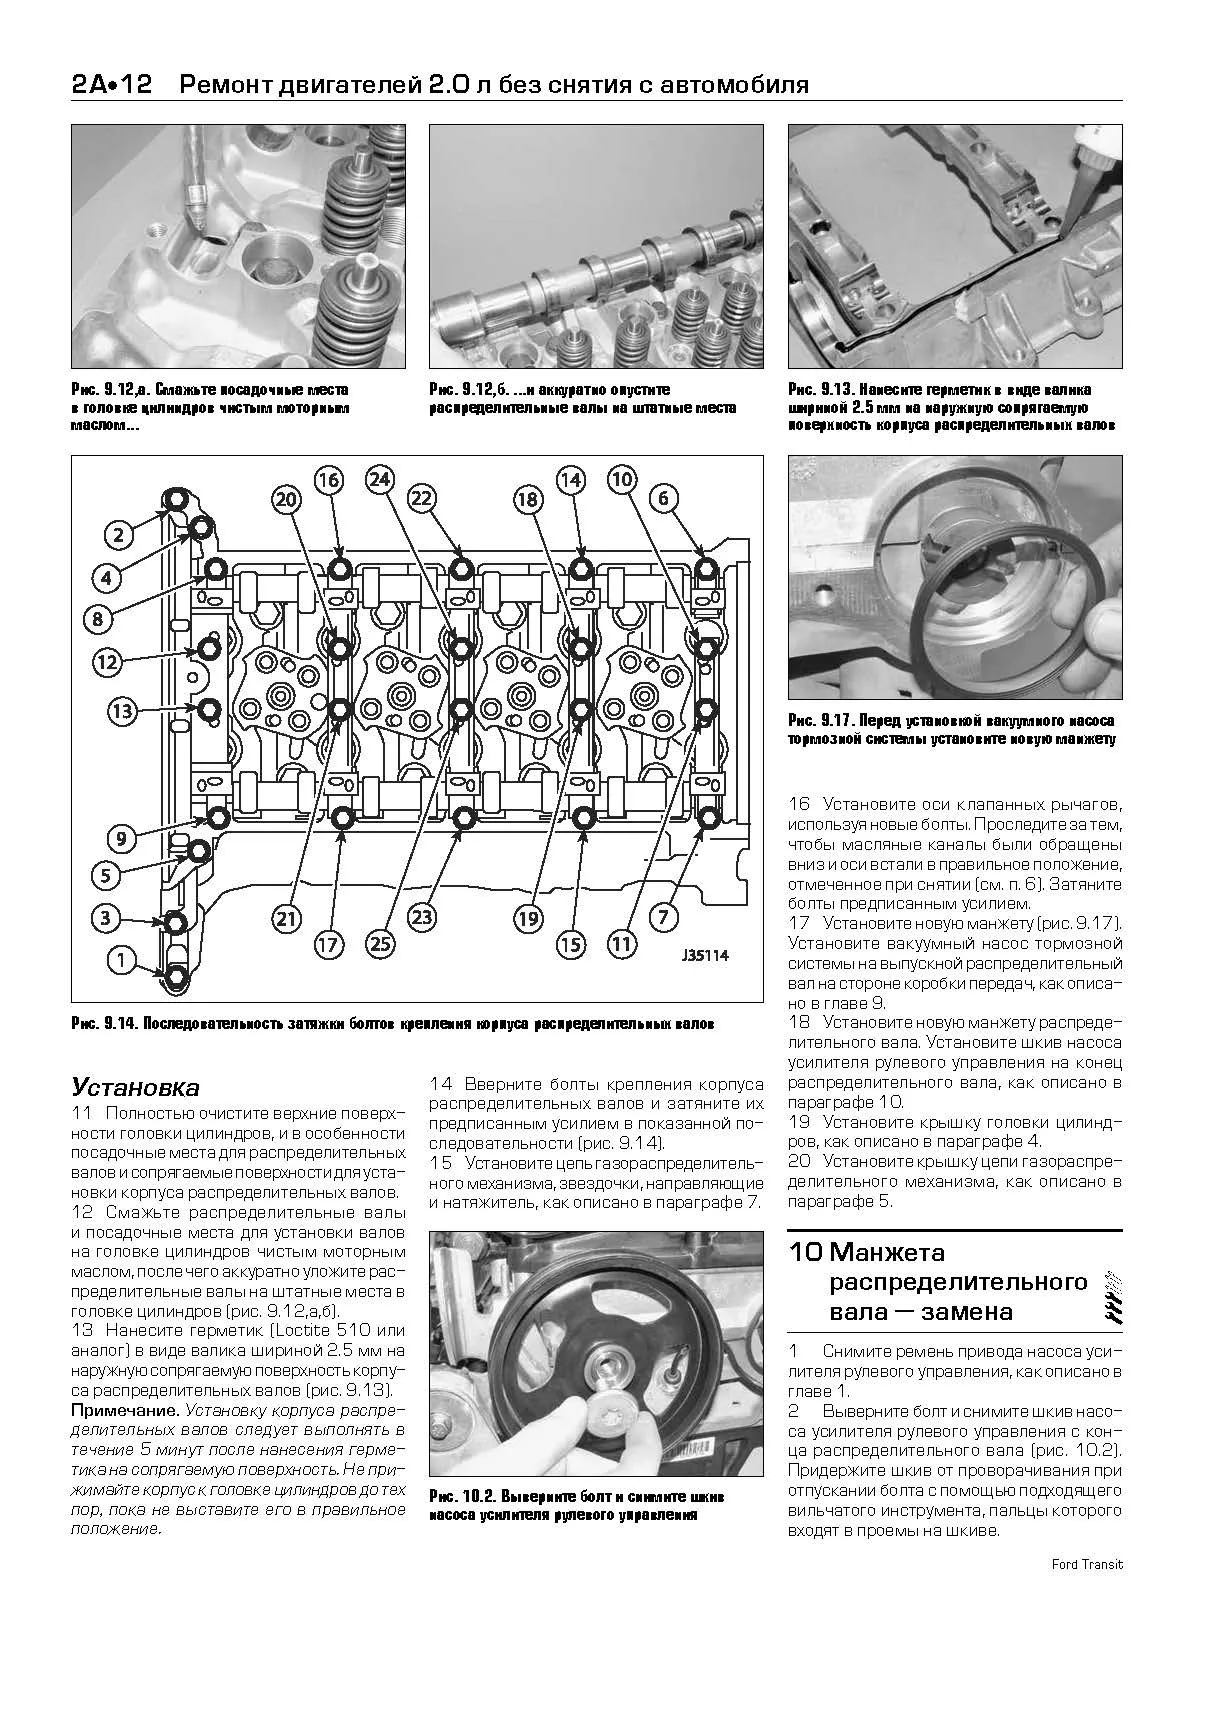 Книга Ford Transit 2000-2006 дизель, каталог з/ч, ч/б фото, электросхемы. Руководство по ремонту и эксплуатации автомобиля. Легион-Автодата